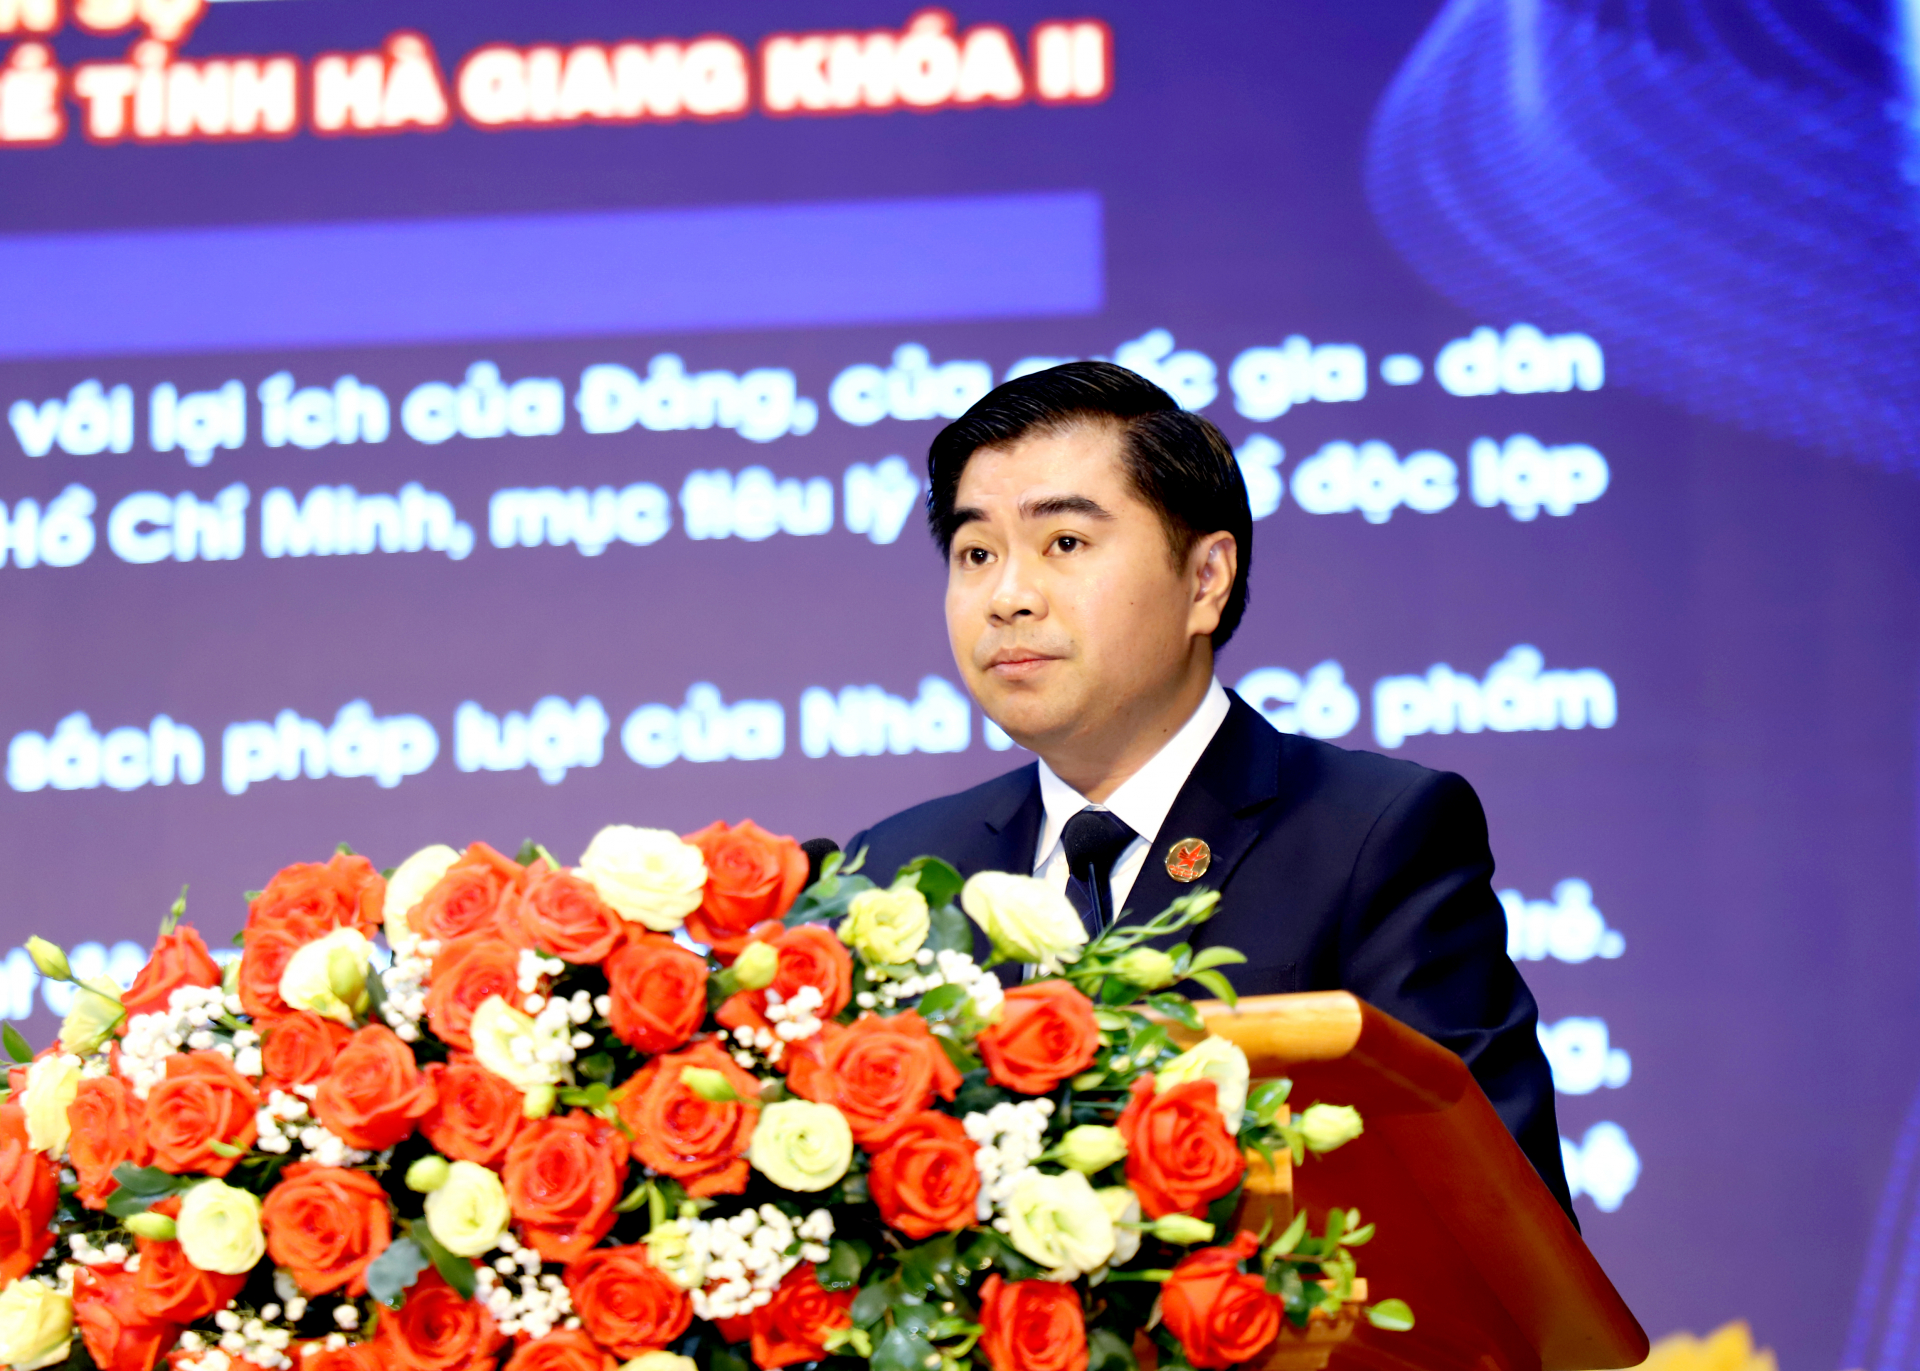 Chủ tịch Hội Doanh nhân trẻ tỉnh Hà Giang nhiệm kỳ 2017 - 2022, Tổng Giám đốc Công ty Cổ phần Đầu tư và phát triển Phương Đông Đỗ Ngọc Thuận điều hành đại hội.